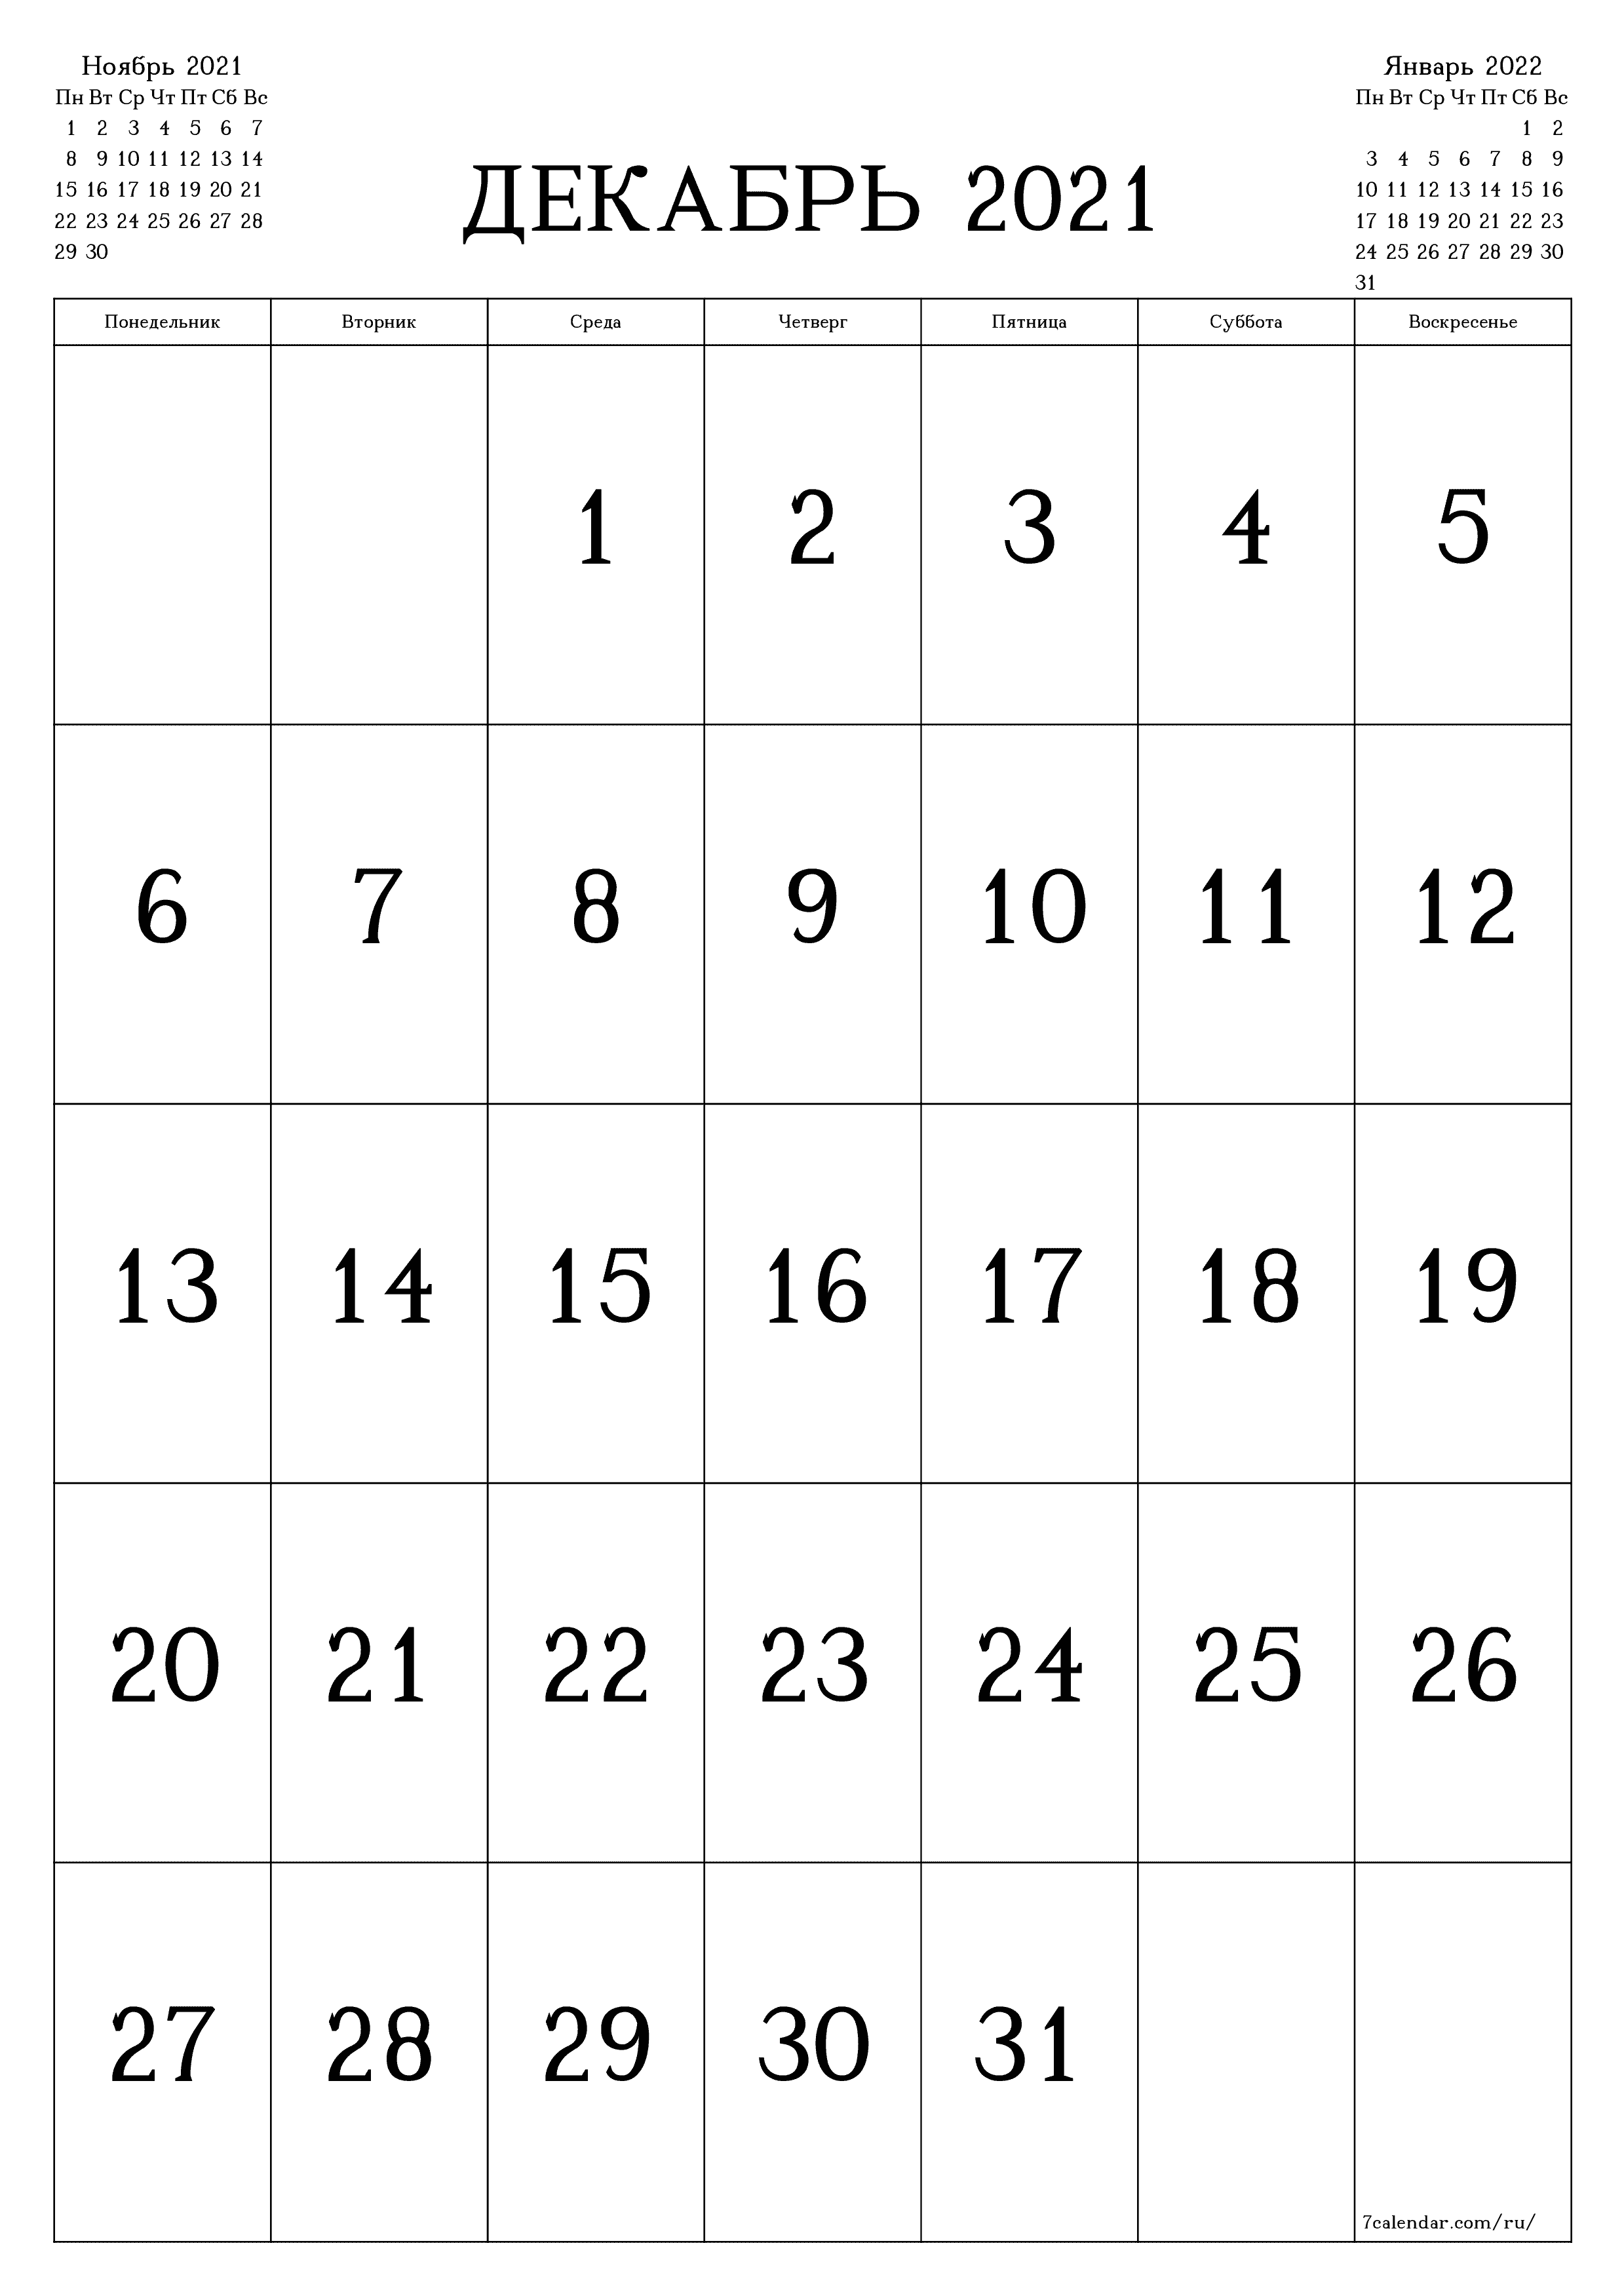 Пустой ежемесячный календарь-планер на месяц Декабрь 2021